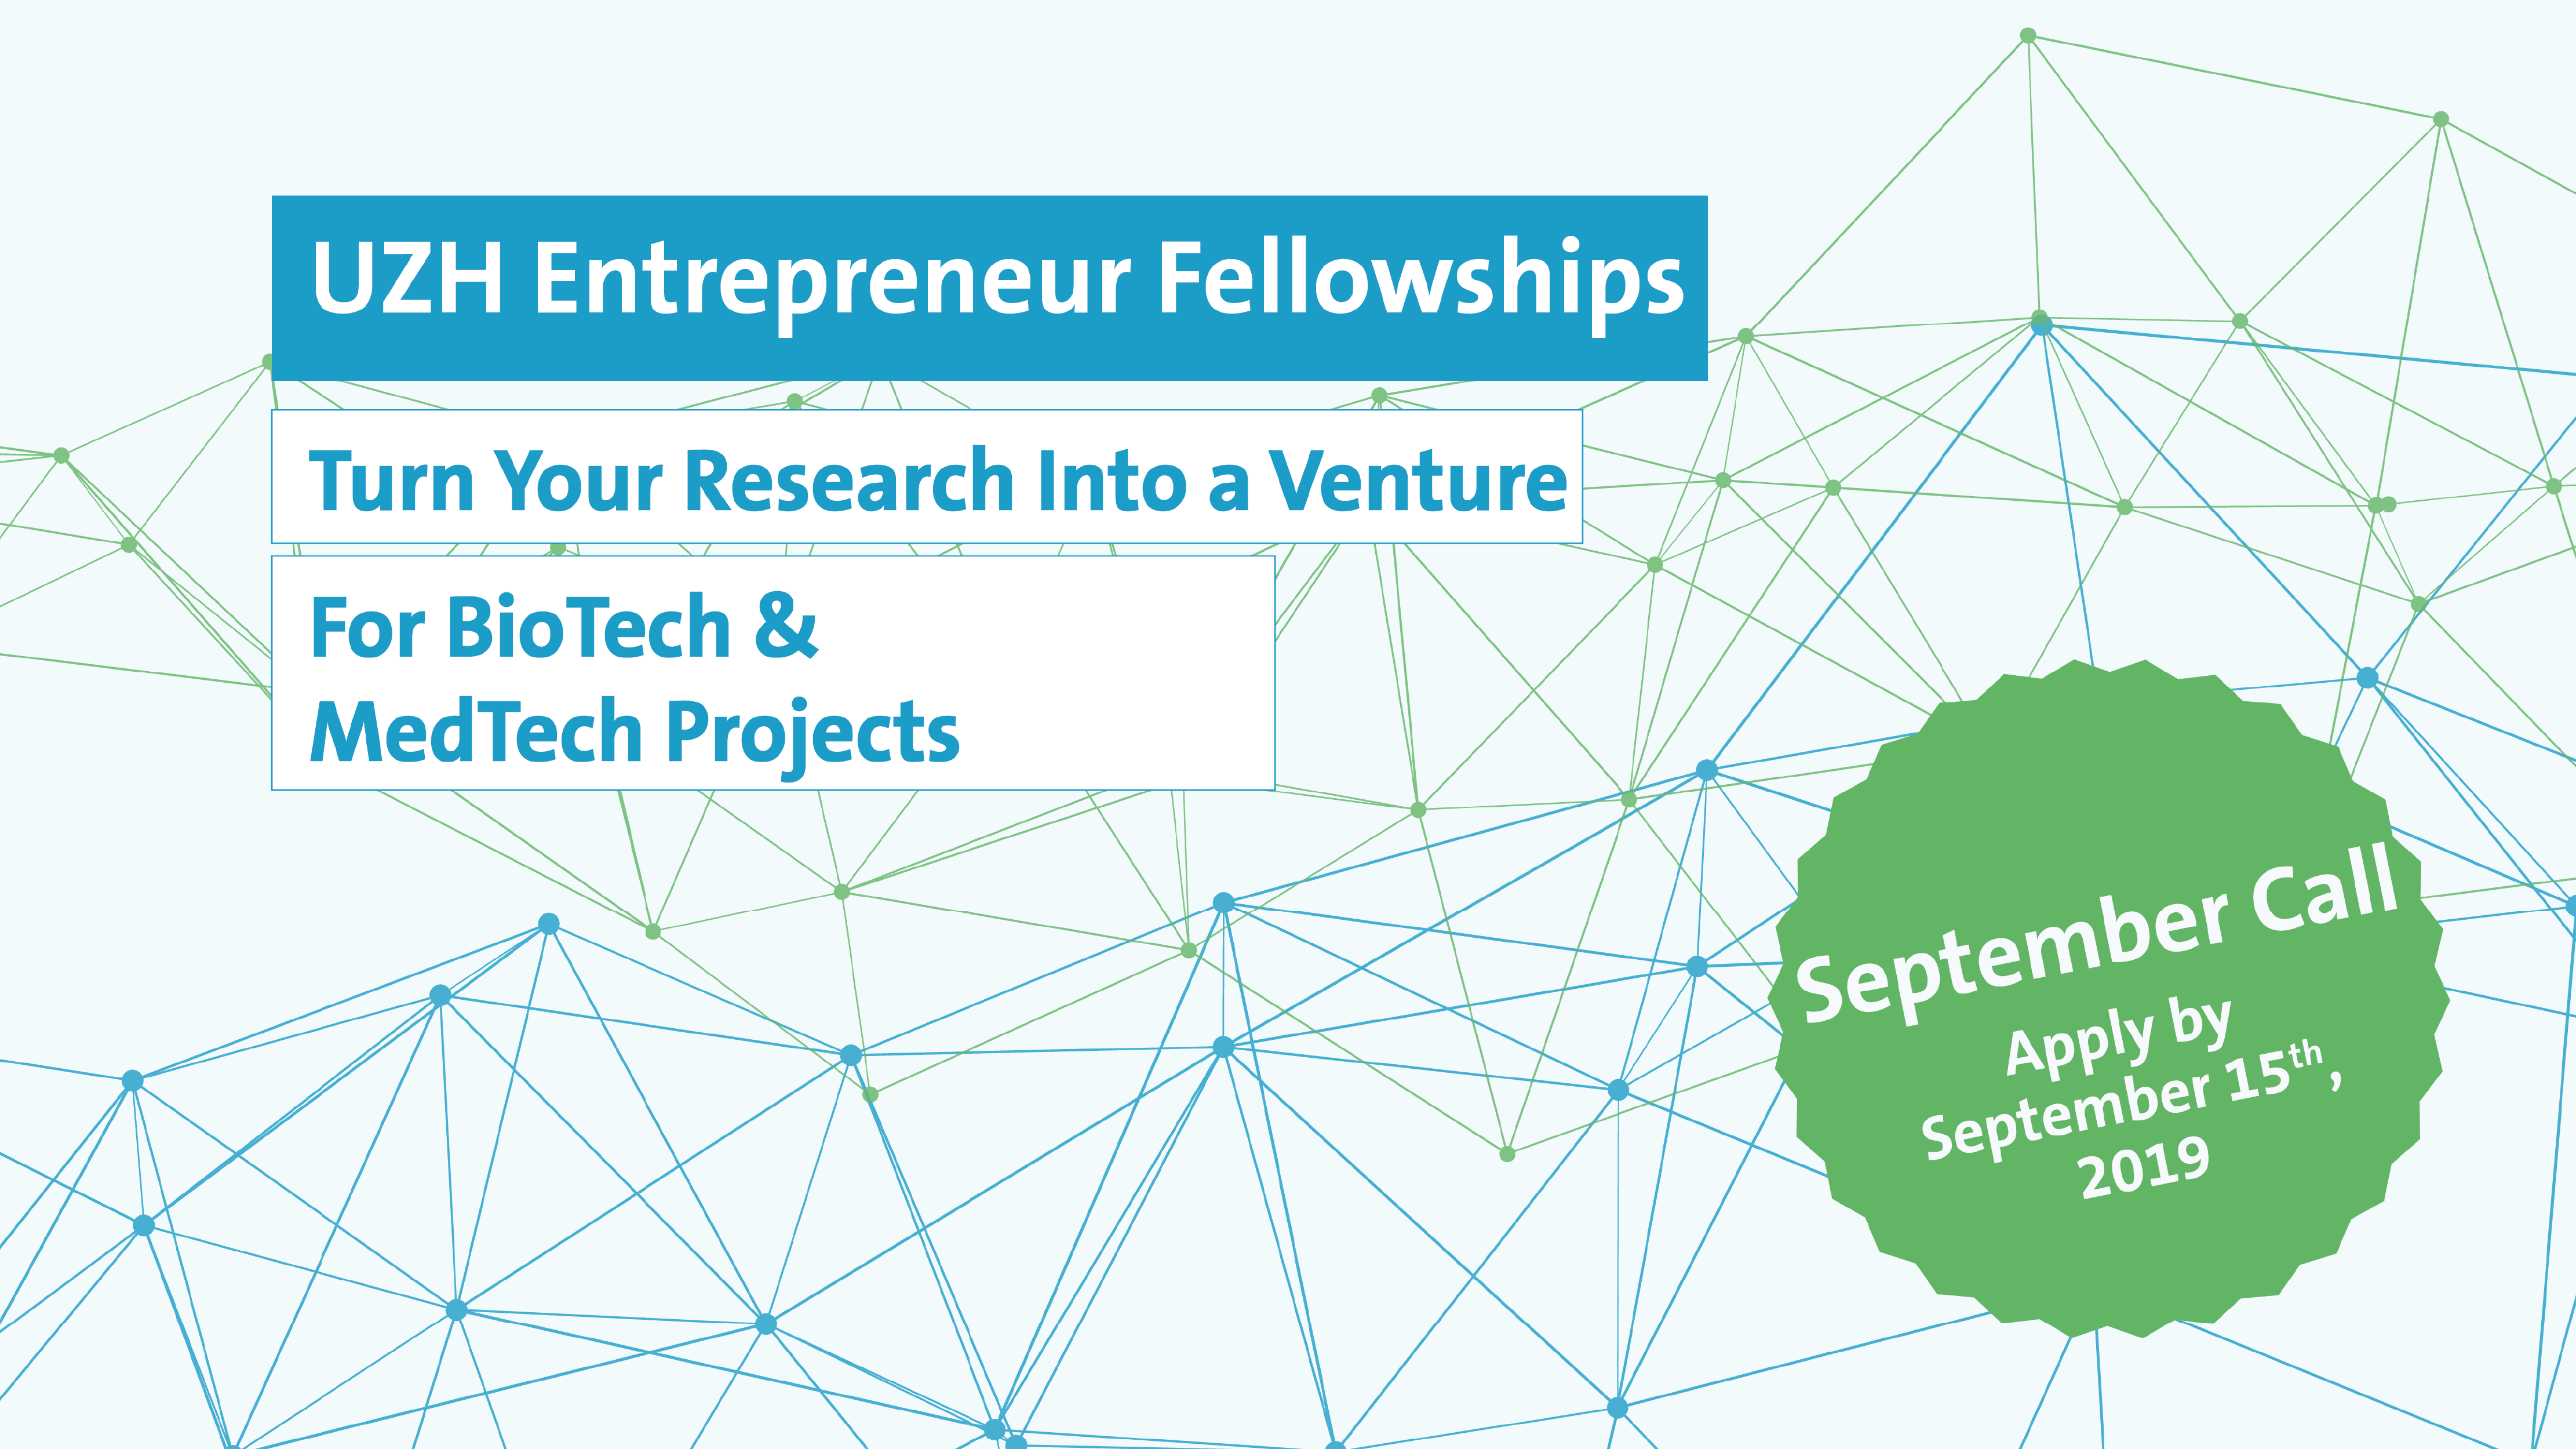 UZH Entrepreneur Fellowships September Call